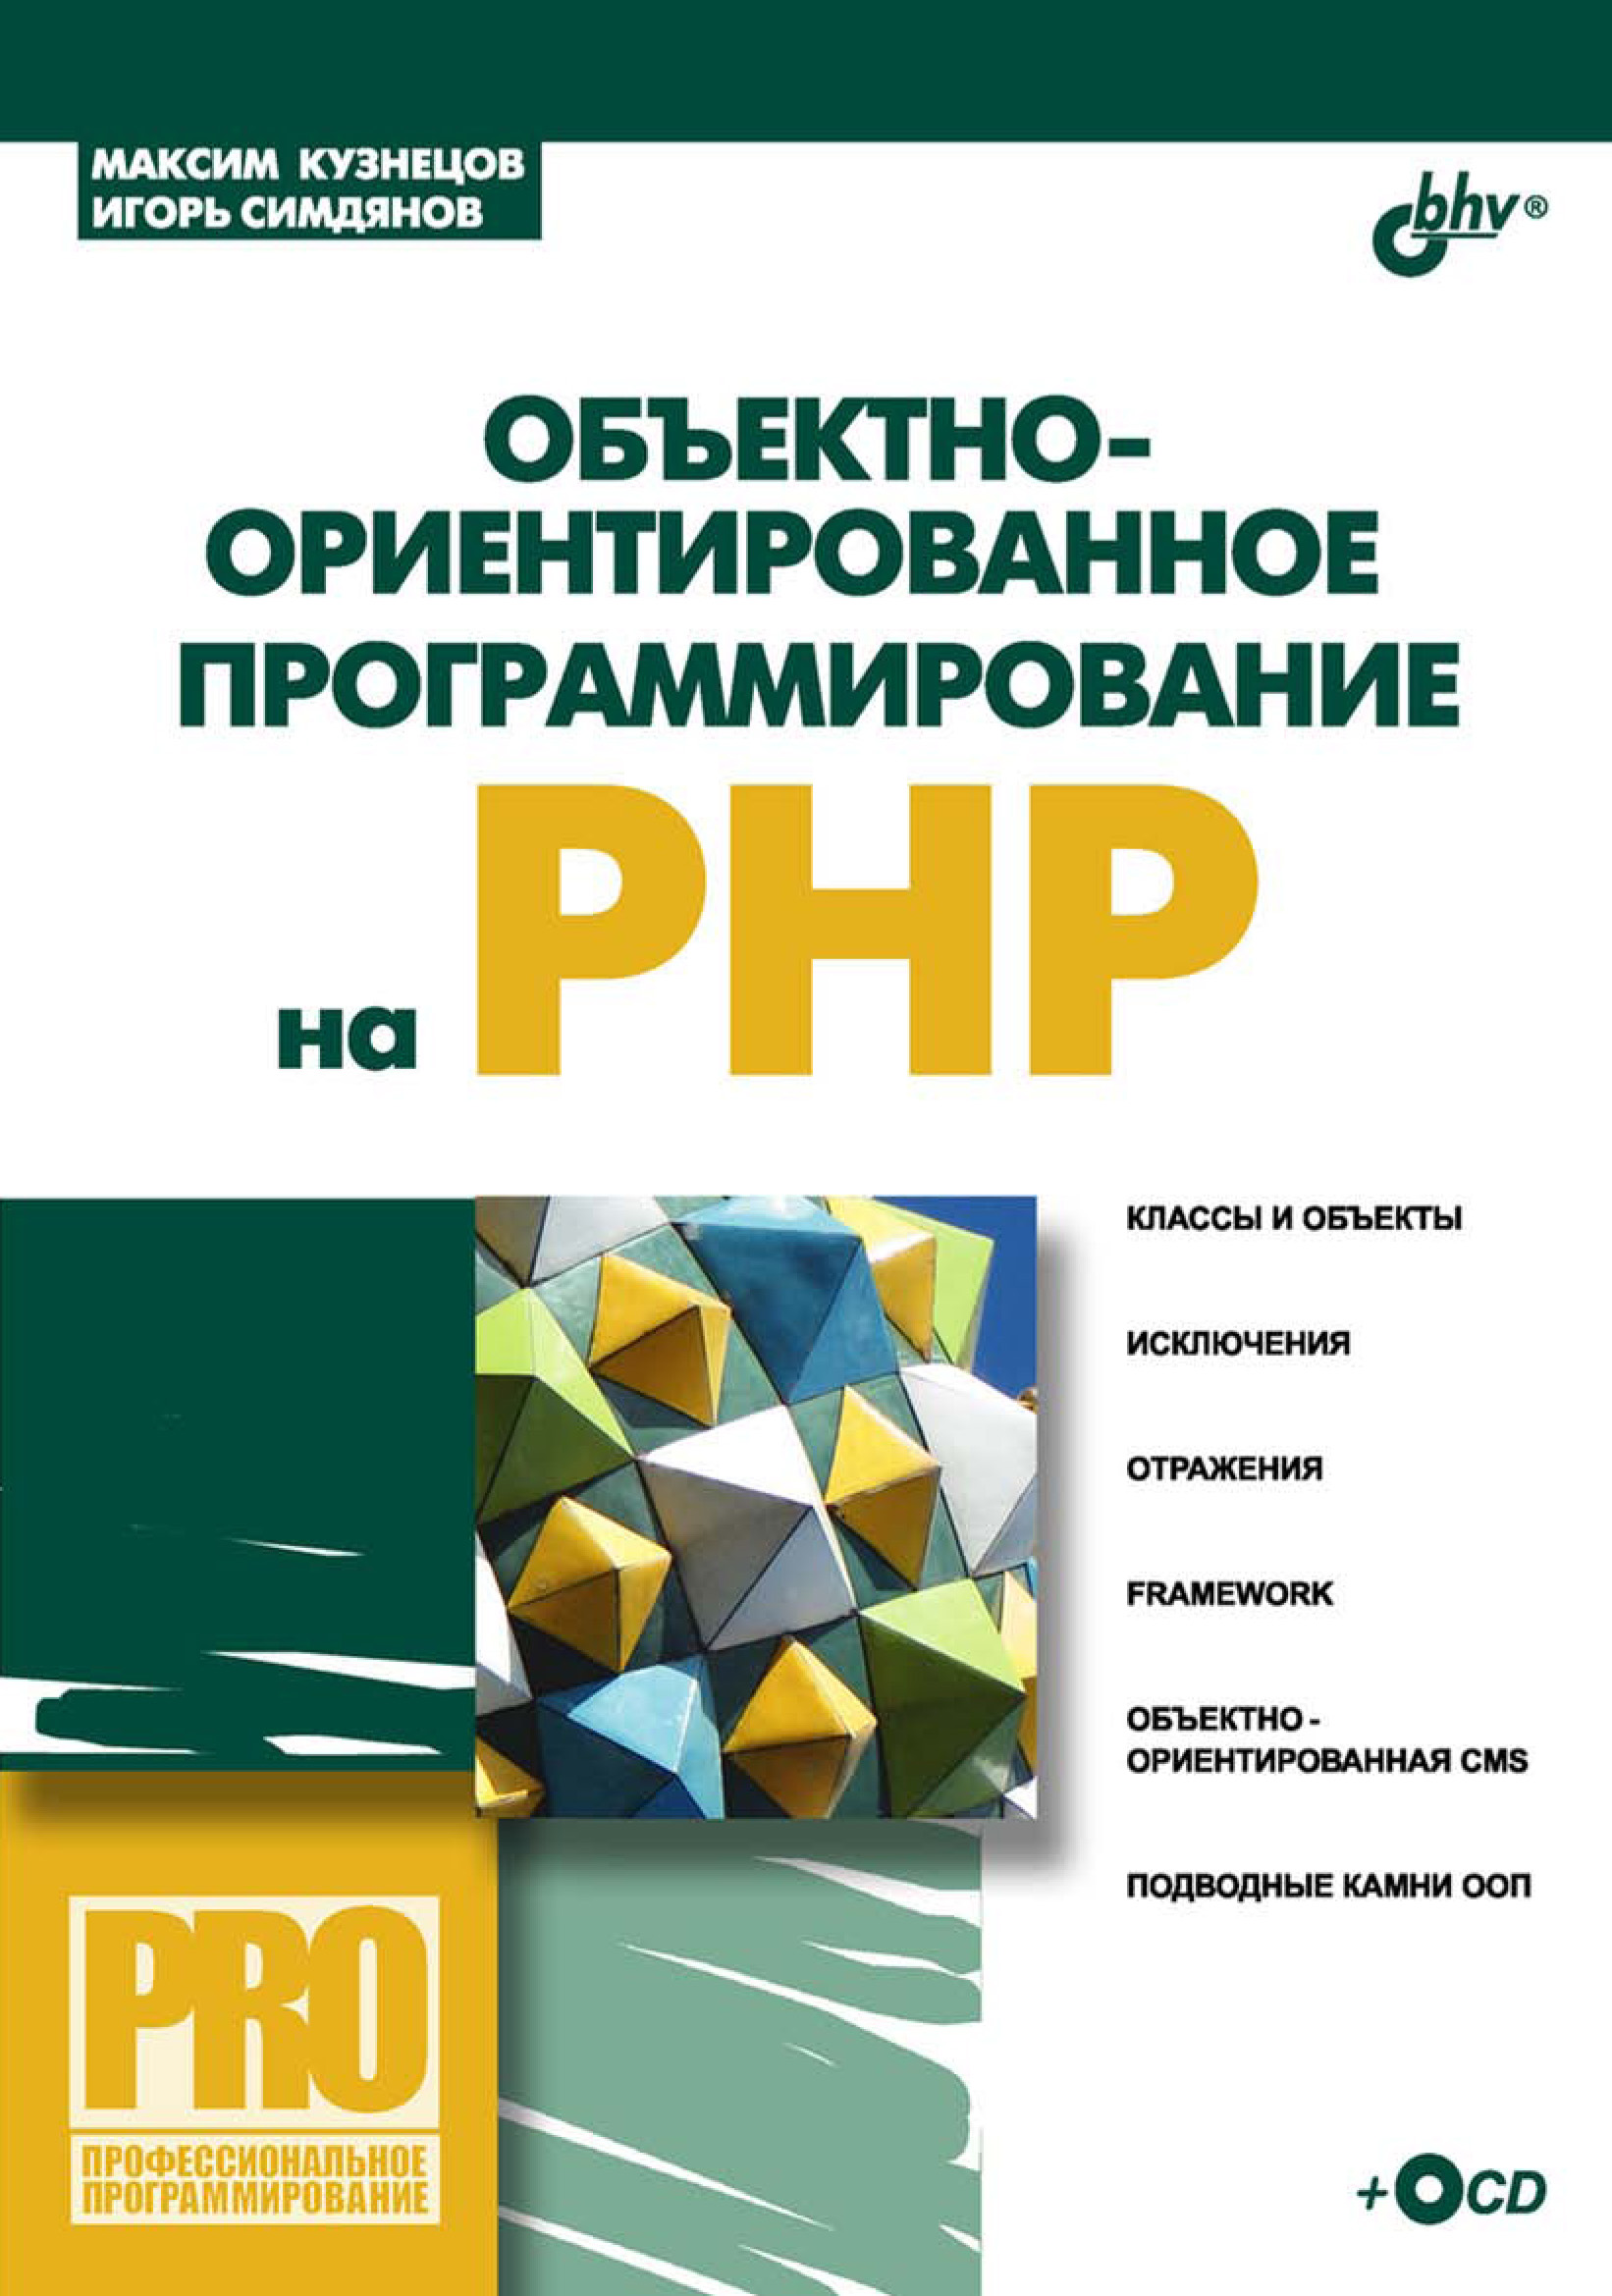 Книга Профессиональное программирование Объектно-ориентированное программирование на PHP созданная Максим Кузнецов, Игорь Симдянов может относится к жанру базы данных, интернет, программирование. Стоимость электронной книги Объектно-ориентированное программирование на PHP с идентификатором 6989621 составляет 215.00 руб.